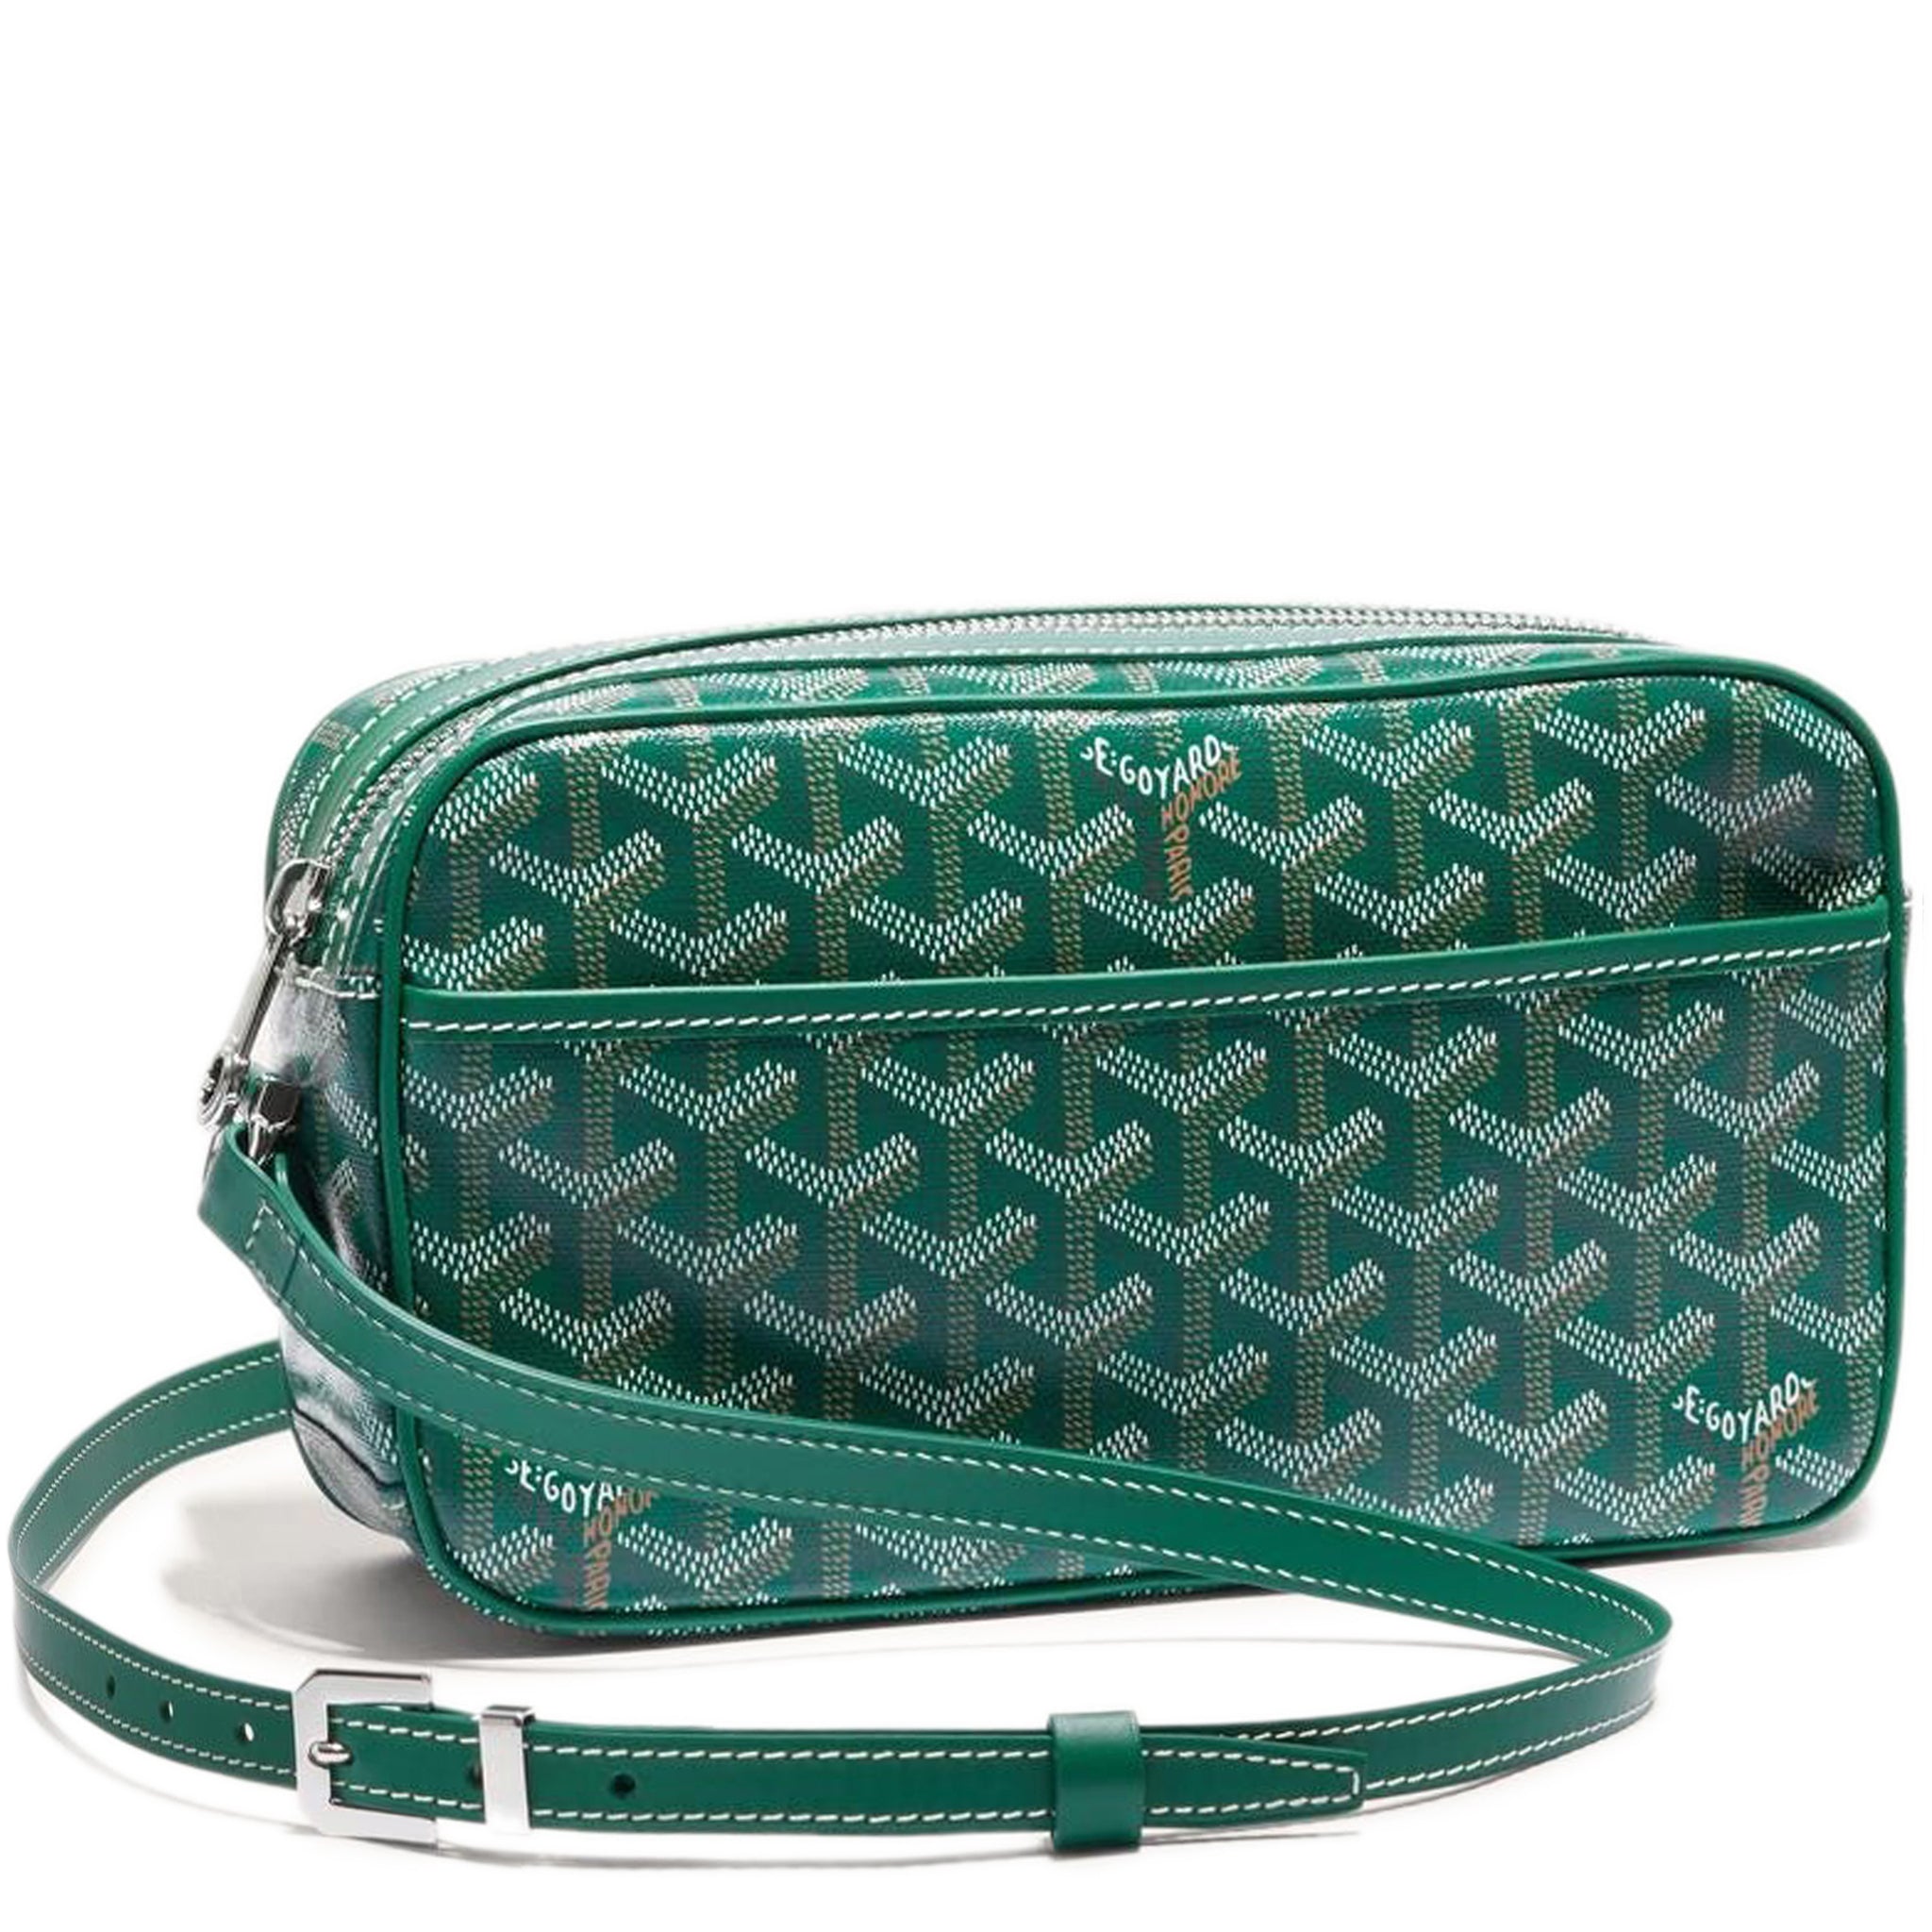 Goyard sac cap vert PM [Green], Women's Fashion, Bags & Wallets